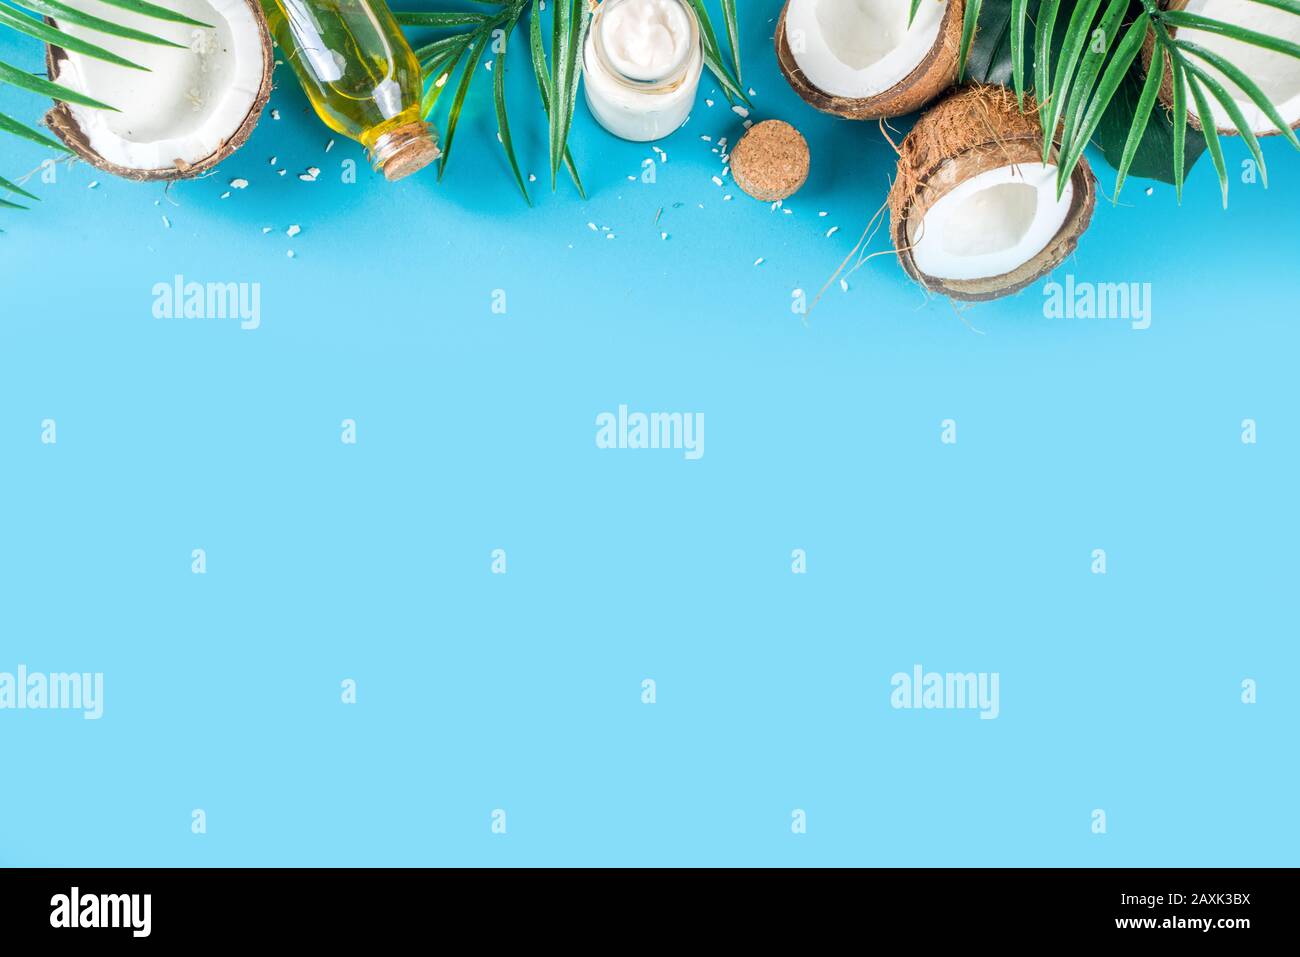 Kokosöl im Glasbecher mit tropischen Blättern und frischer Kokosnuss. Konzept für organische mct-Öle. Türkis, Aquamarin Hintergrund Stockfoto